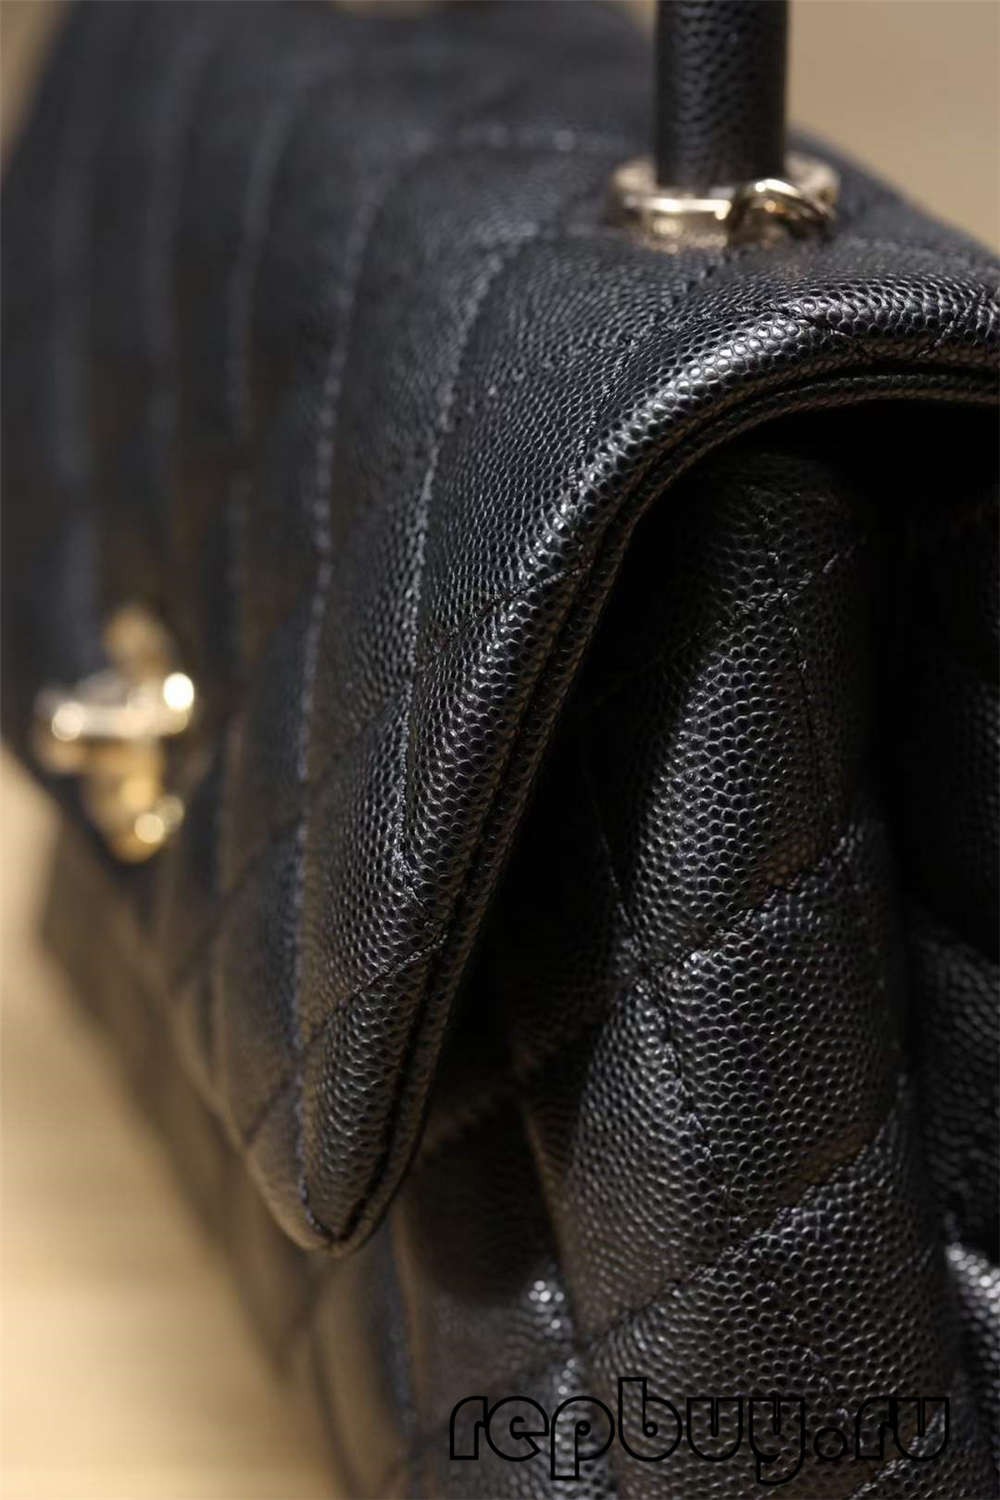 I-Chanel Coco Handle Top Replica Handbag Black Buckle Look (2022 Kubuyekeziwe)-Ikhwalithi Engcono Kakhulu Isitolo Sesikhwama Somgunyathi sikaLouis Vuitton sekhwalithi ephezulu, isikhwama se-replica yomklami ru